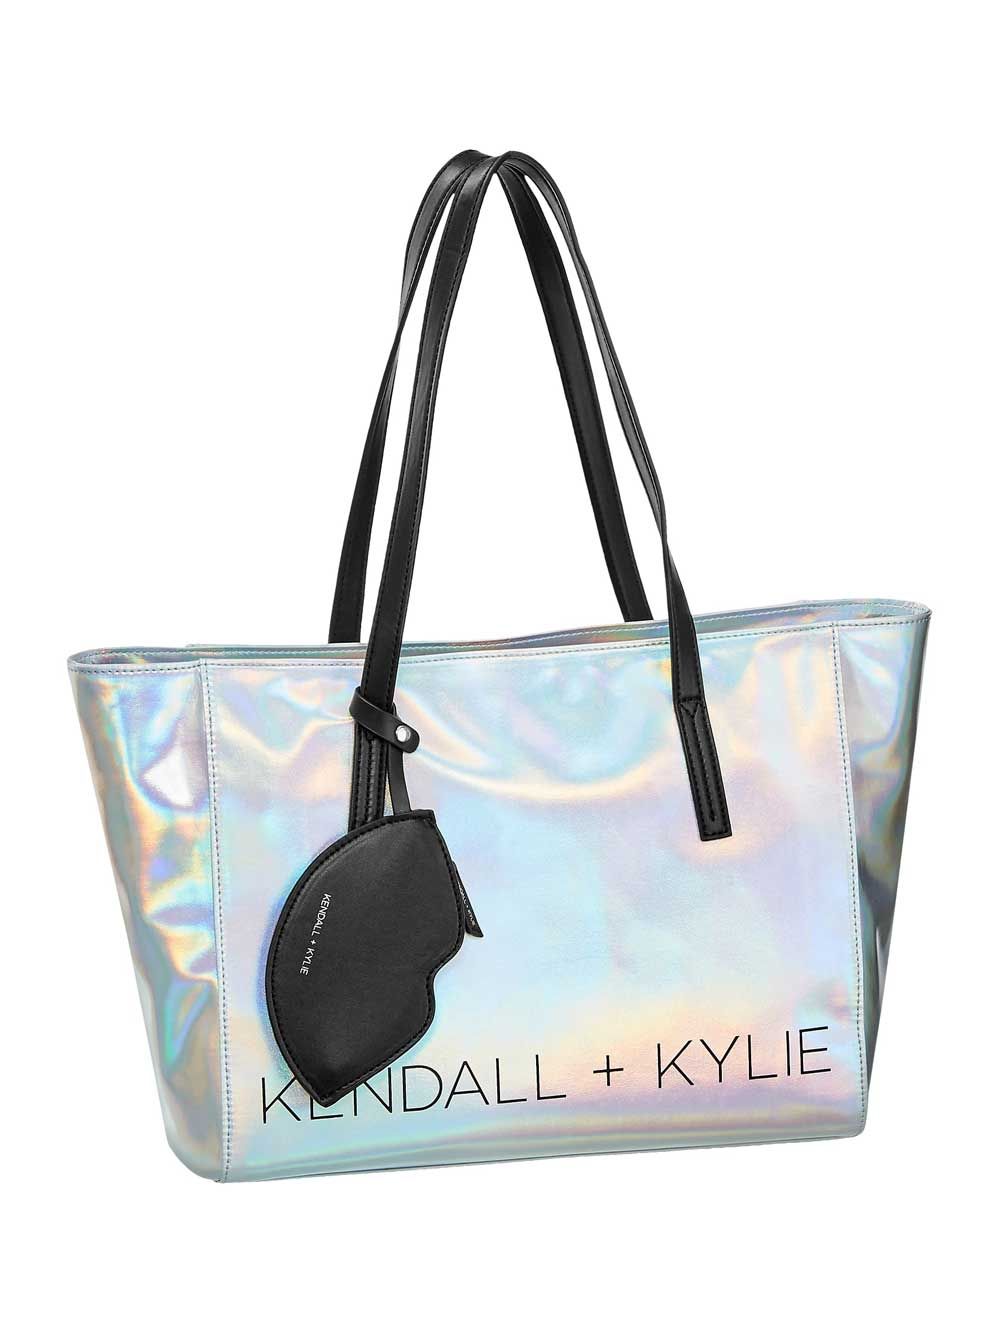 La colección de bolsos exclusiva de Kendall+Kylie Jenner para Deichmann -  Stilo